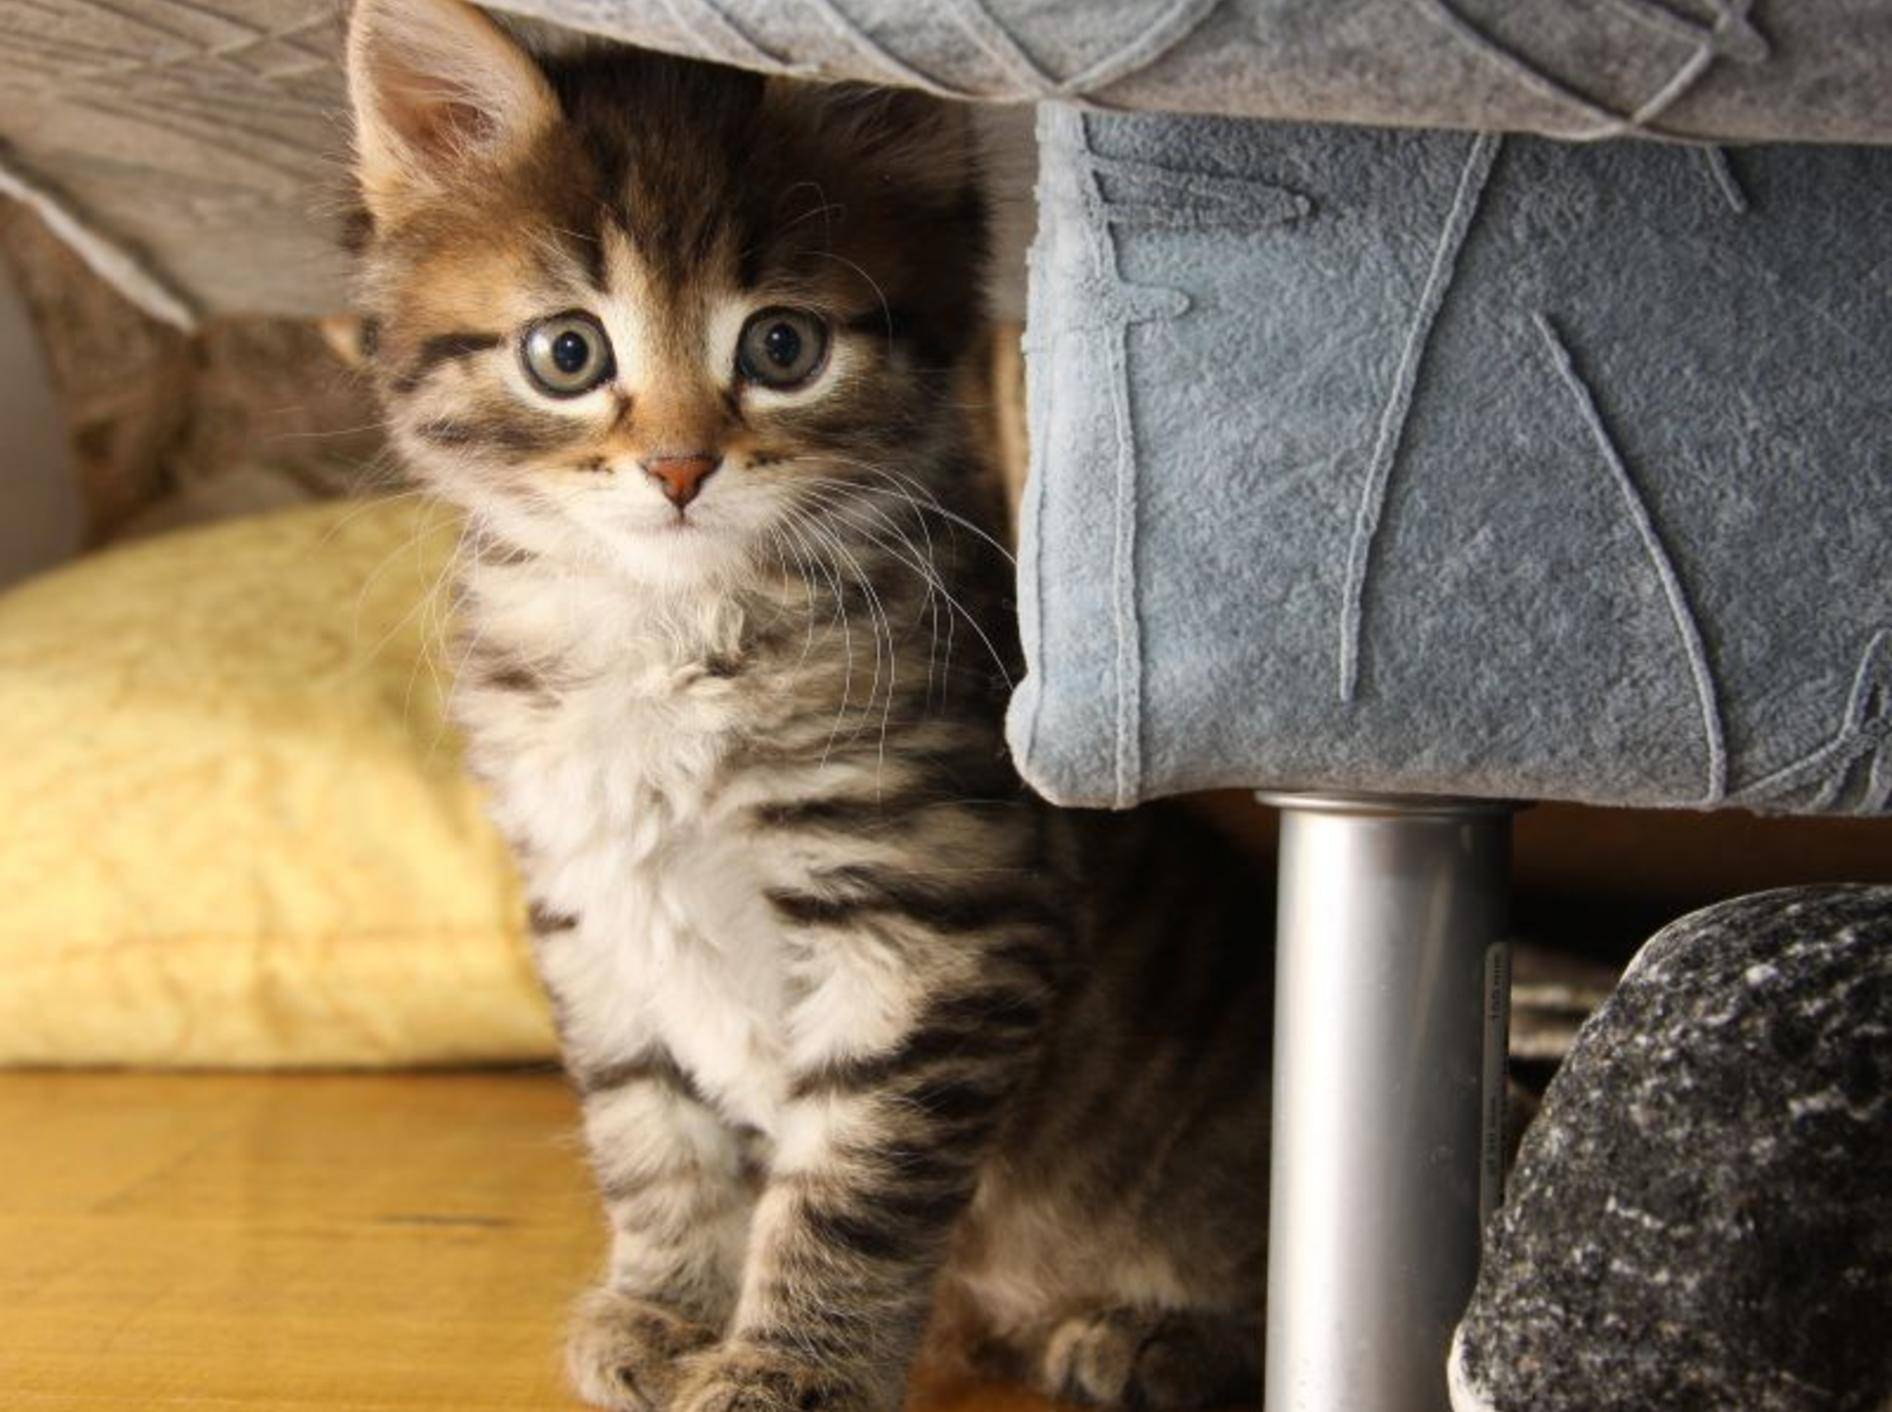 Katzenbabys kaufen: Am Anfang ist alles aufregend! — Bild: Shutterstock / kritskaya